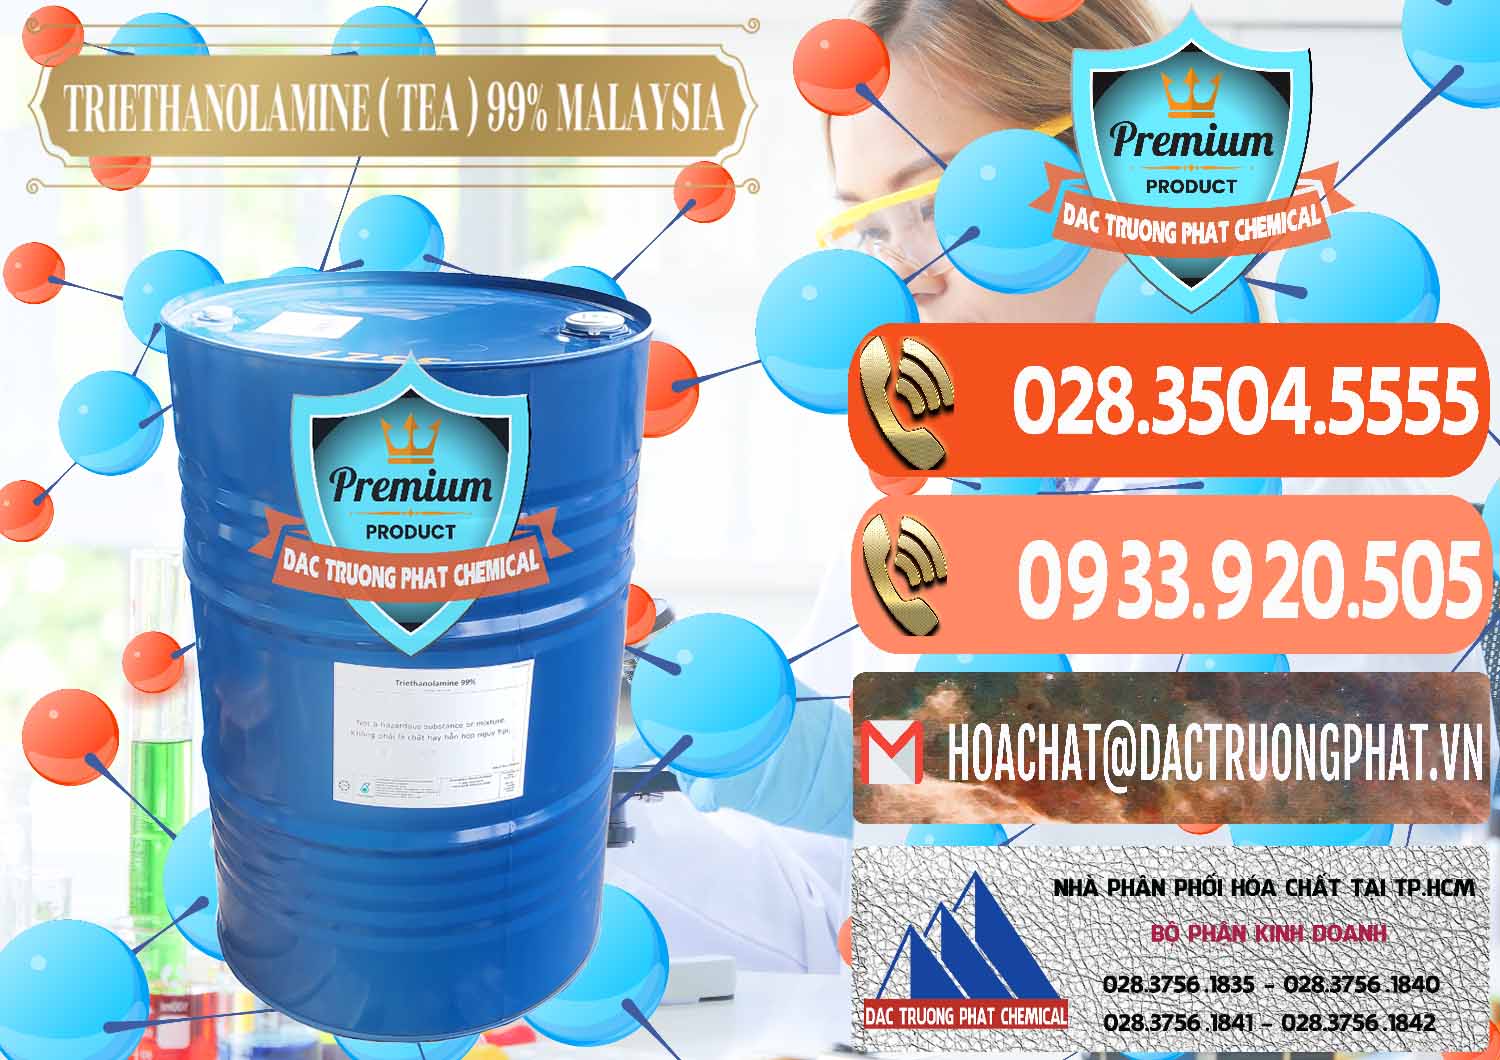 Cty bán ( phân phối ) TEA - Triethanolamine 99% Mã Lai Malaysia - 0323 - Công ty chuyên cung cấp _ kinh doanh hóa chất tại TP.HCM - hoachatmientay.com